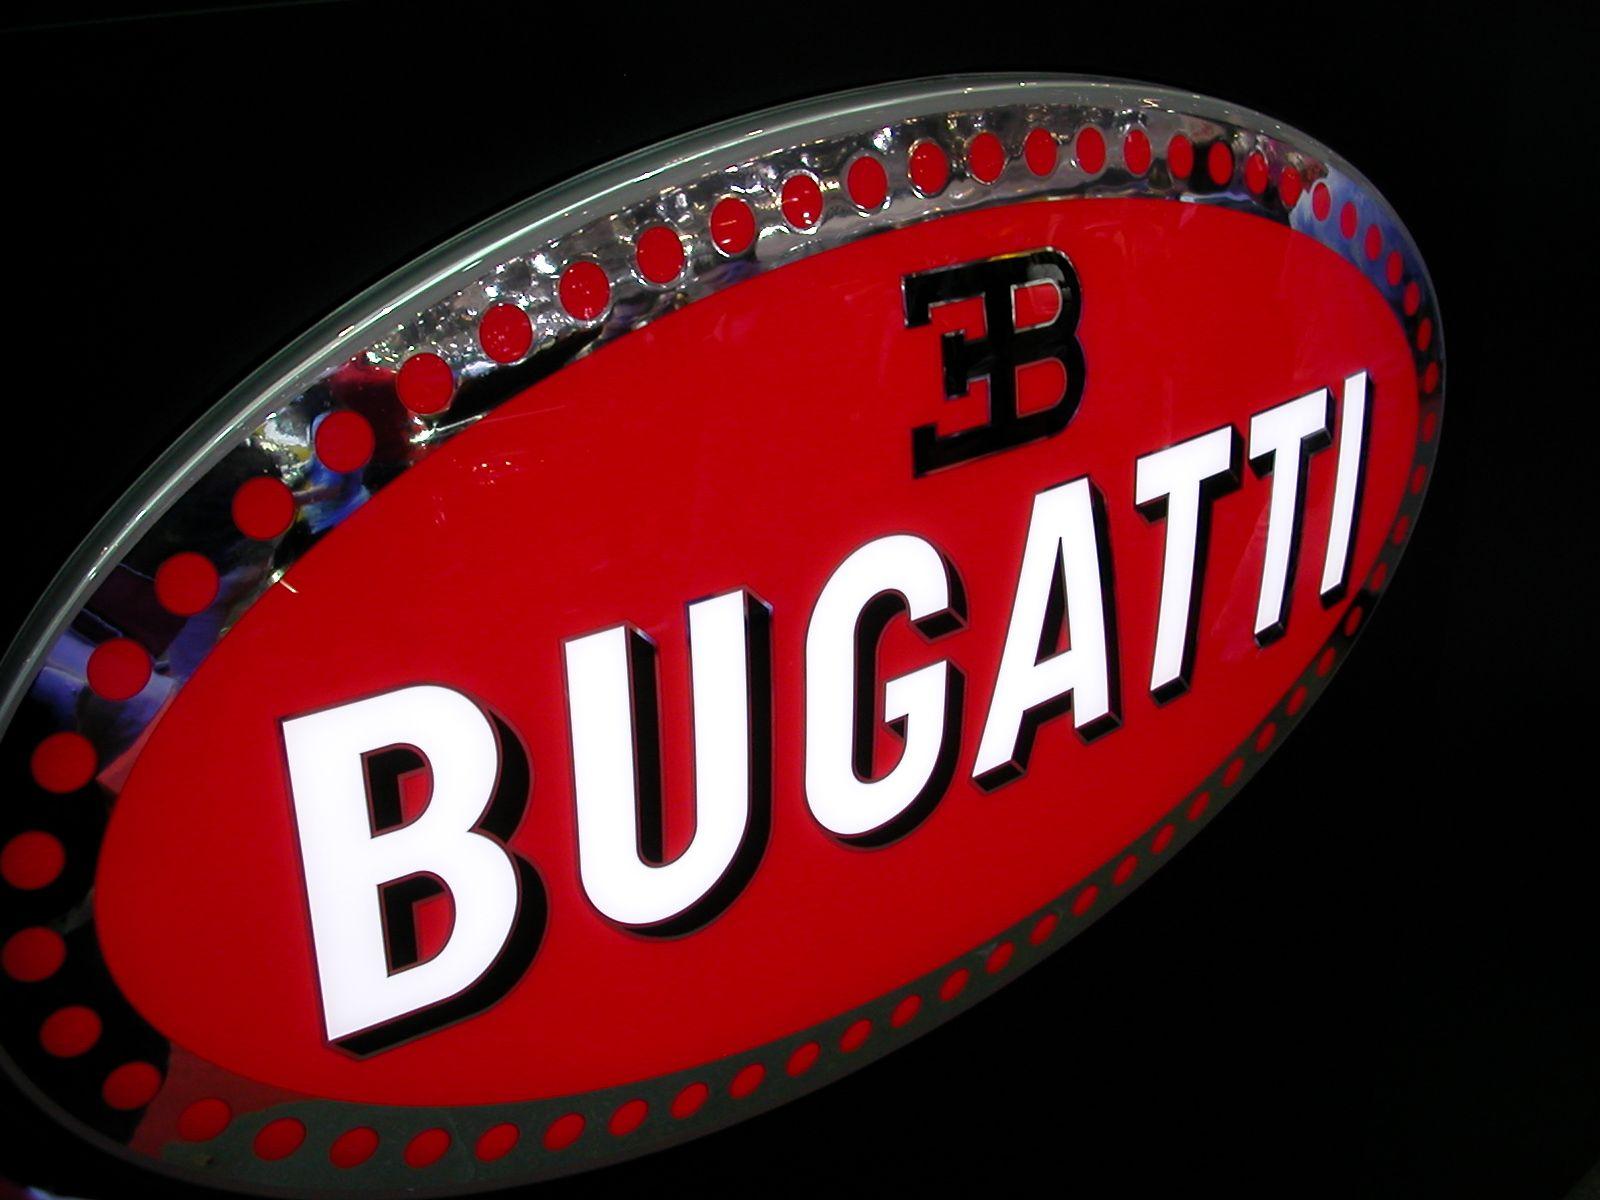 3B Car Logo - Bugatti Logo, Bugatti Car Symbol Meaning and History. Car Brand